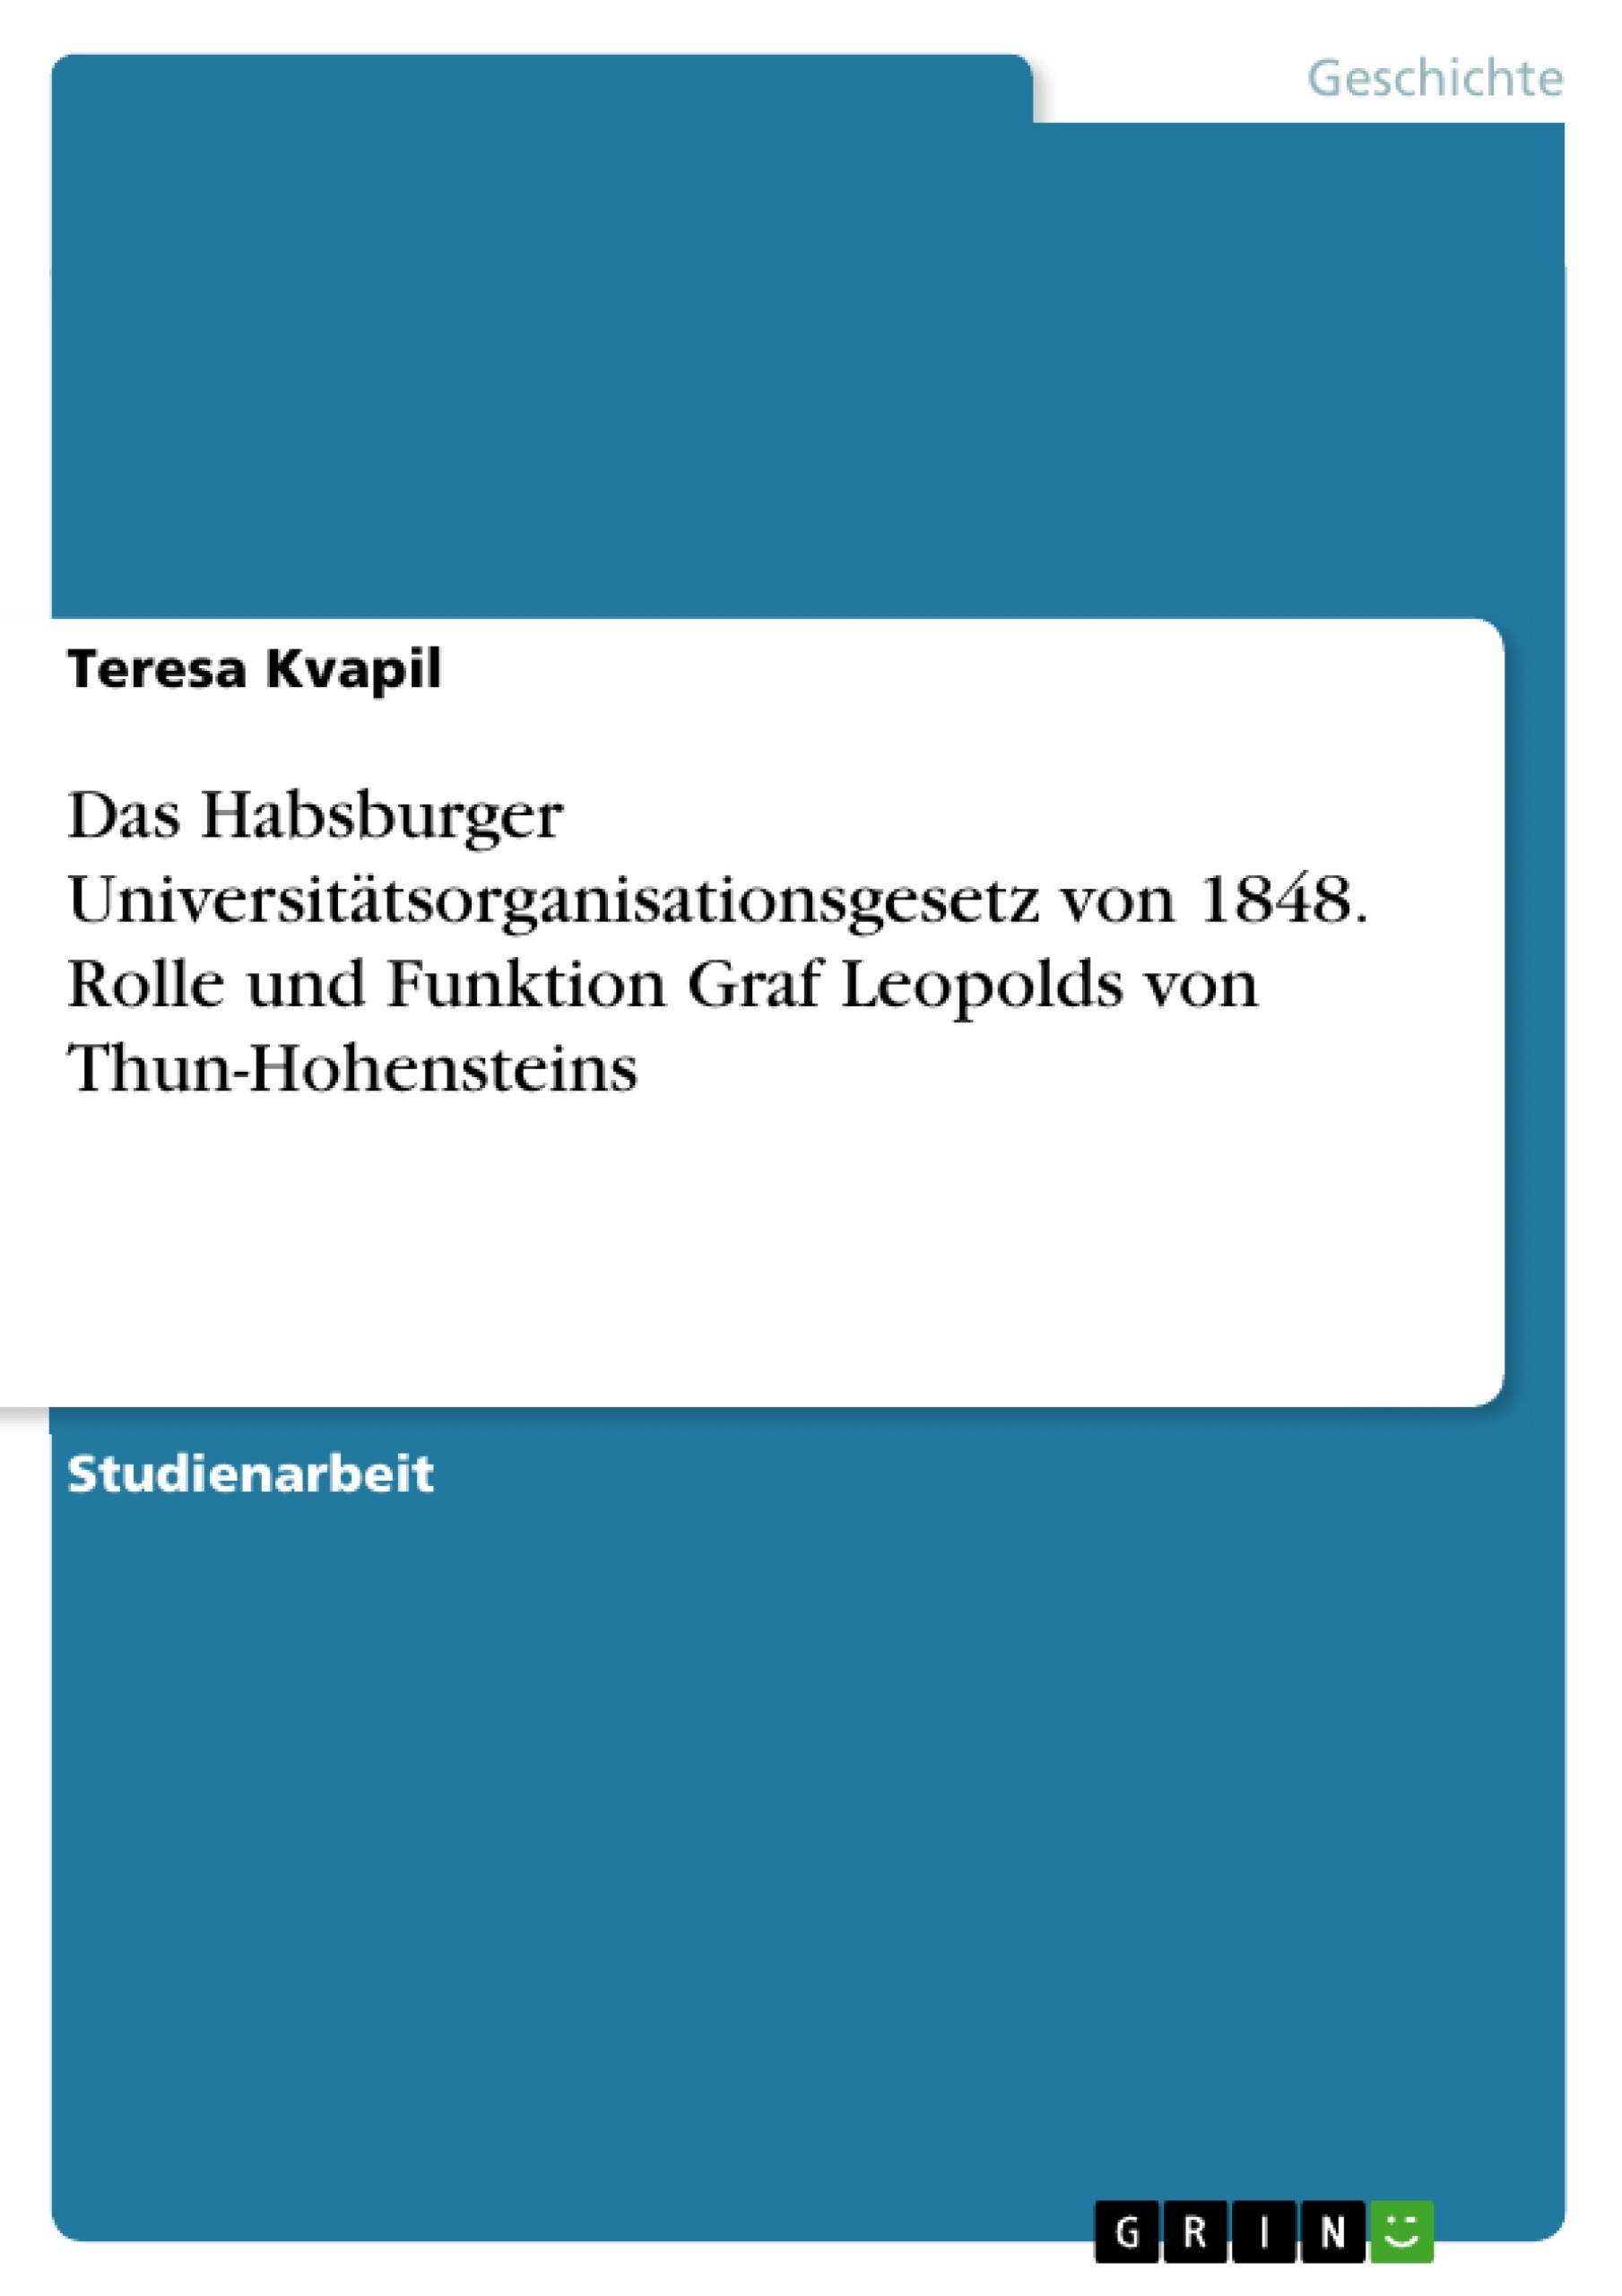 Title: Das Habsburger Universitätsorganisationsgesetz von 1848. Rolle und Funktion Graf Leopolds von Thun-Hohensteins